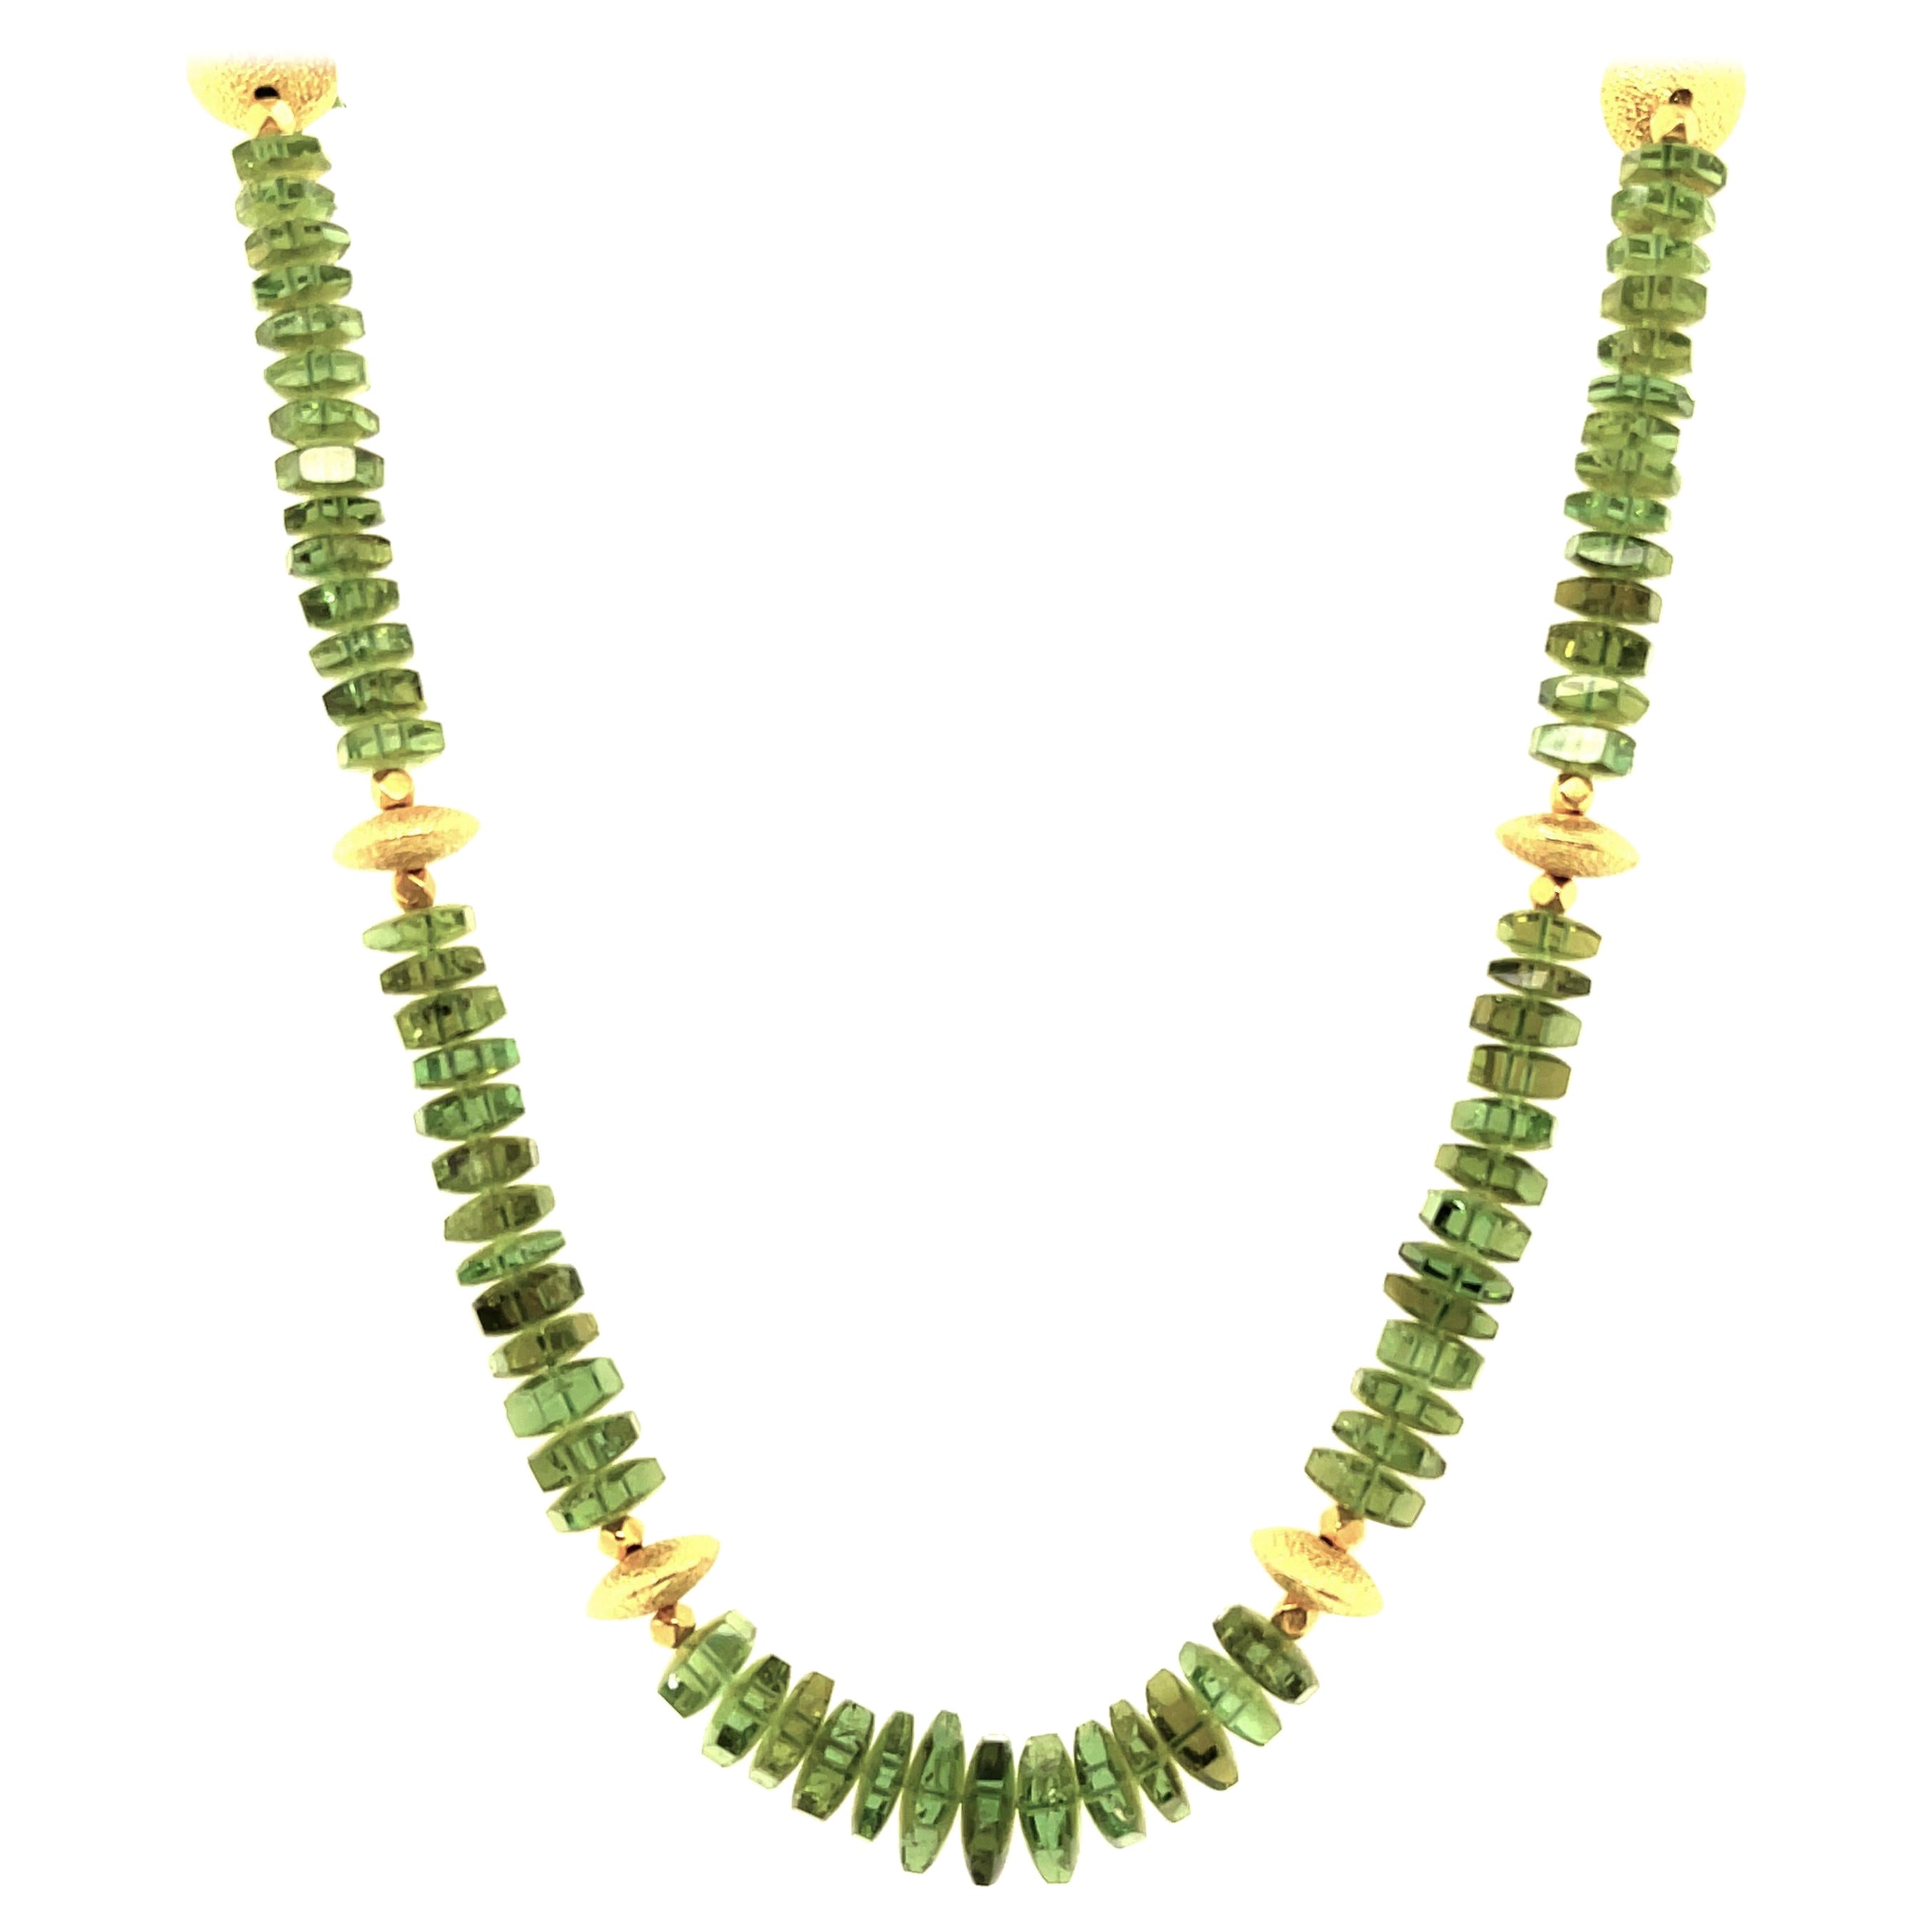 Collier en perles de tourmaline verte et or jaune 18 carats, longueur réglable